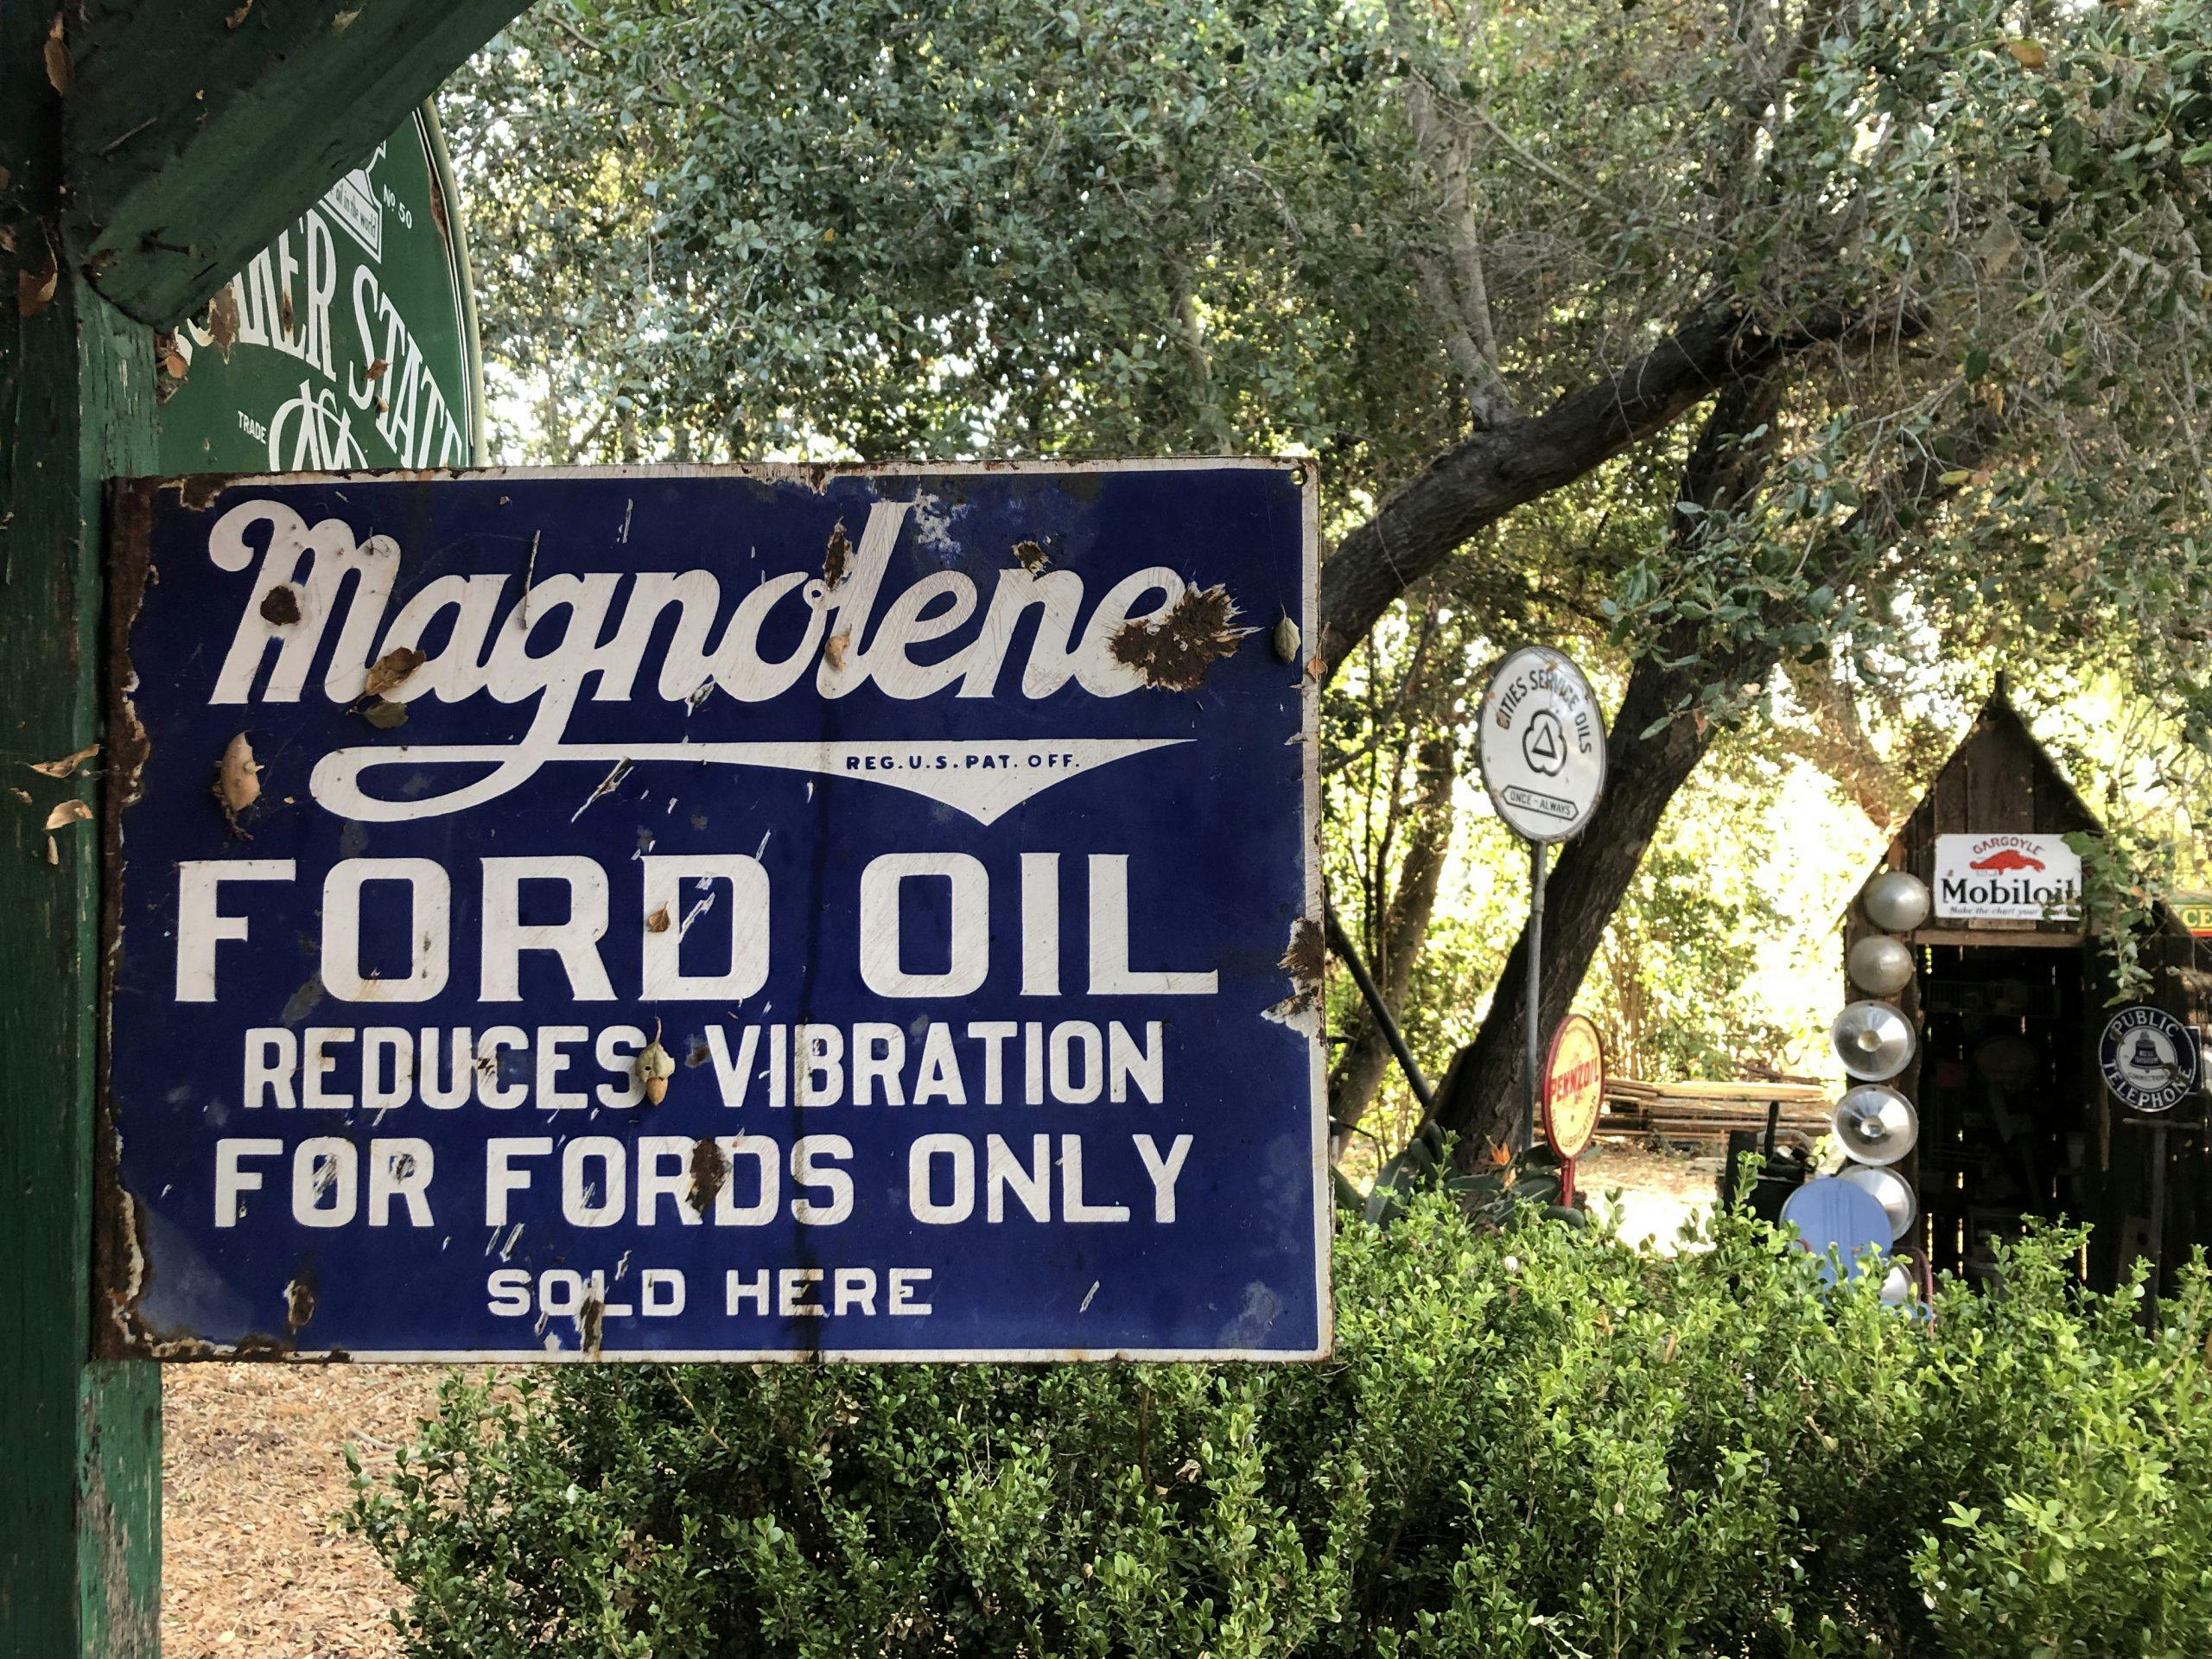 magnolene ford oil vintage sign